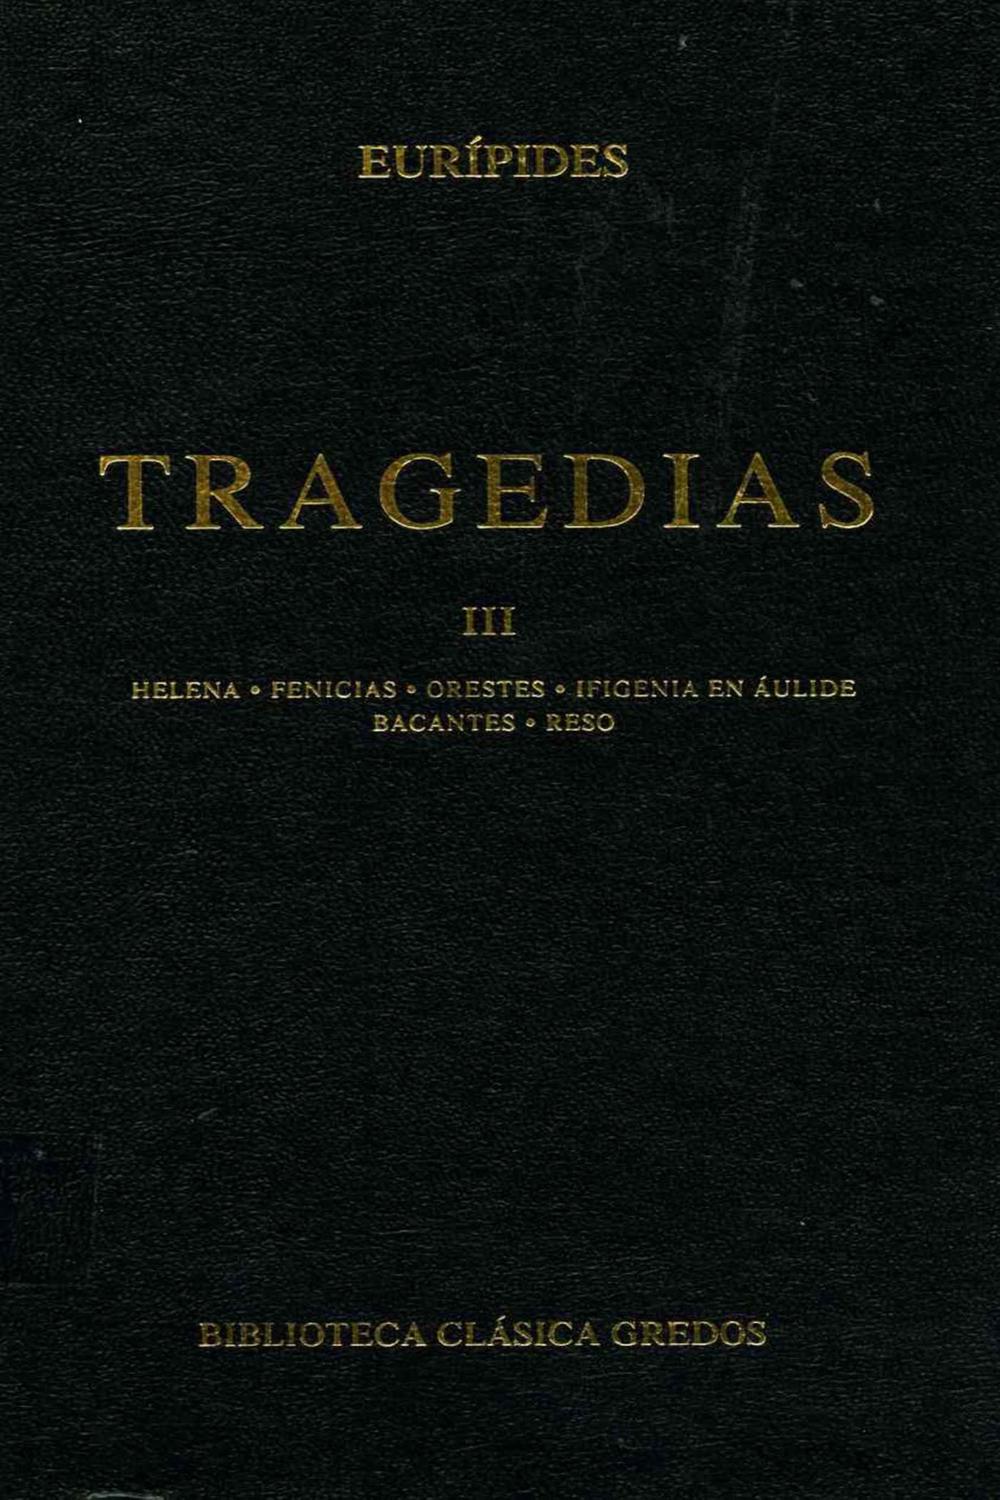 Tragedias III - Eurípides, Carlos García Gual, Luis Alberto de Cuenca y Prado, Alfonso Martínez Díez